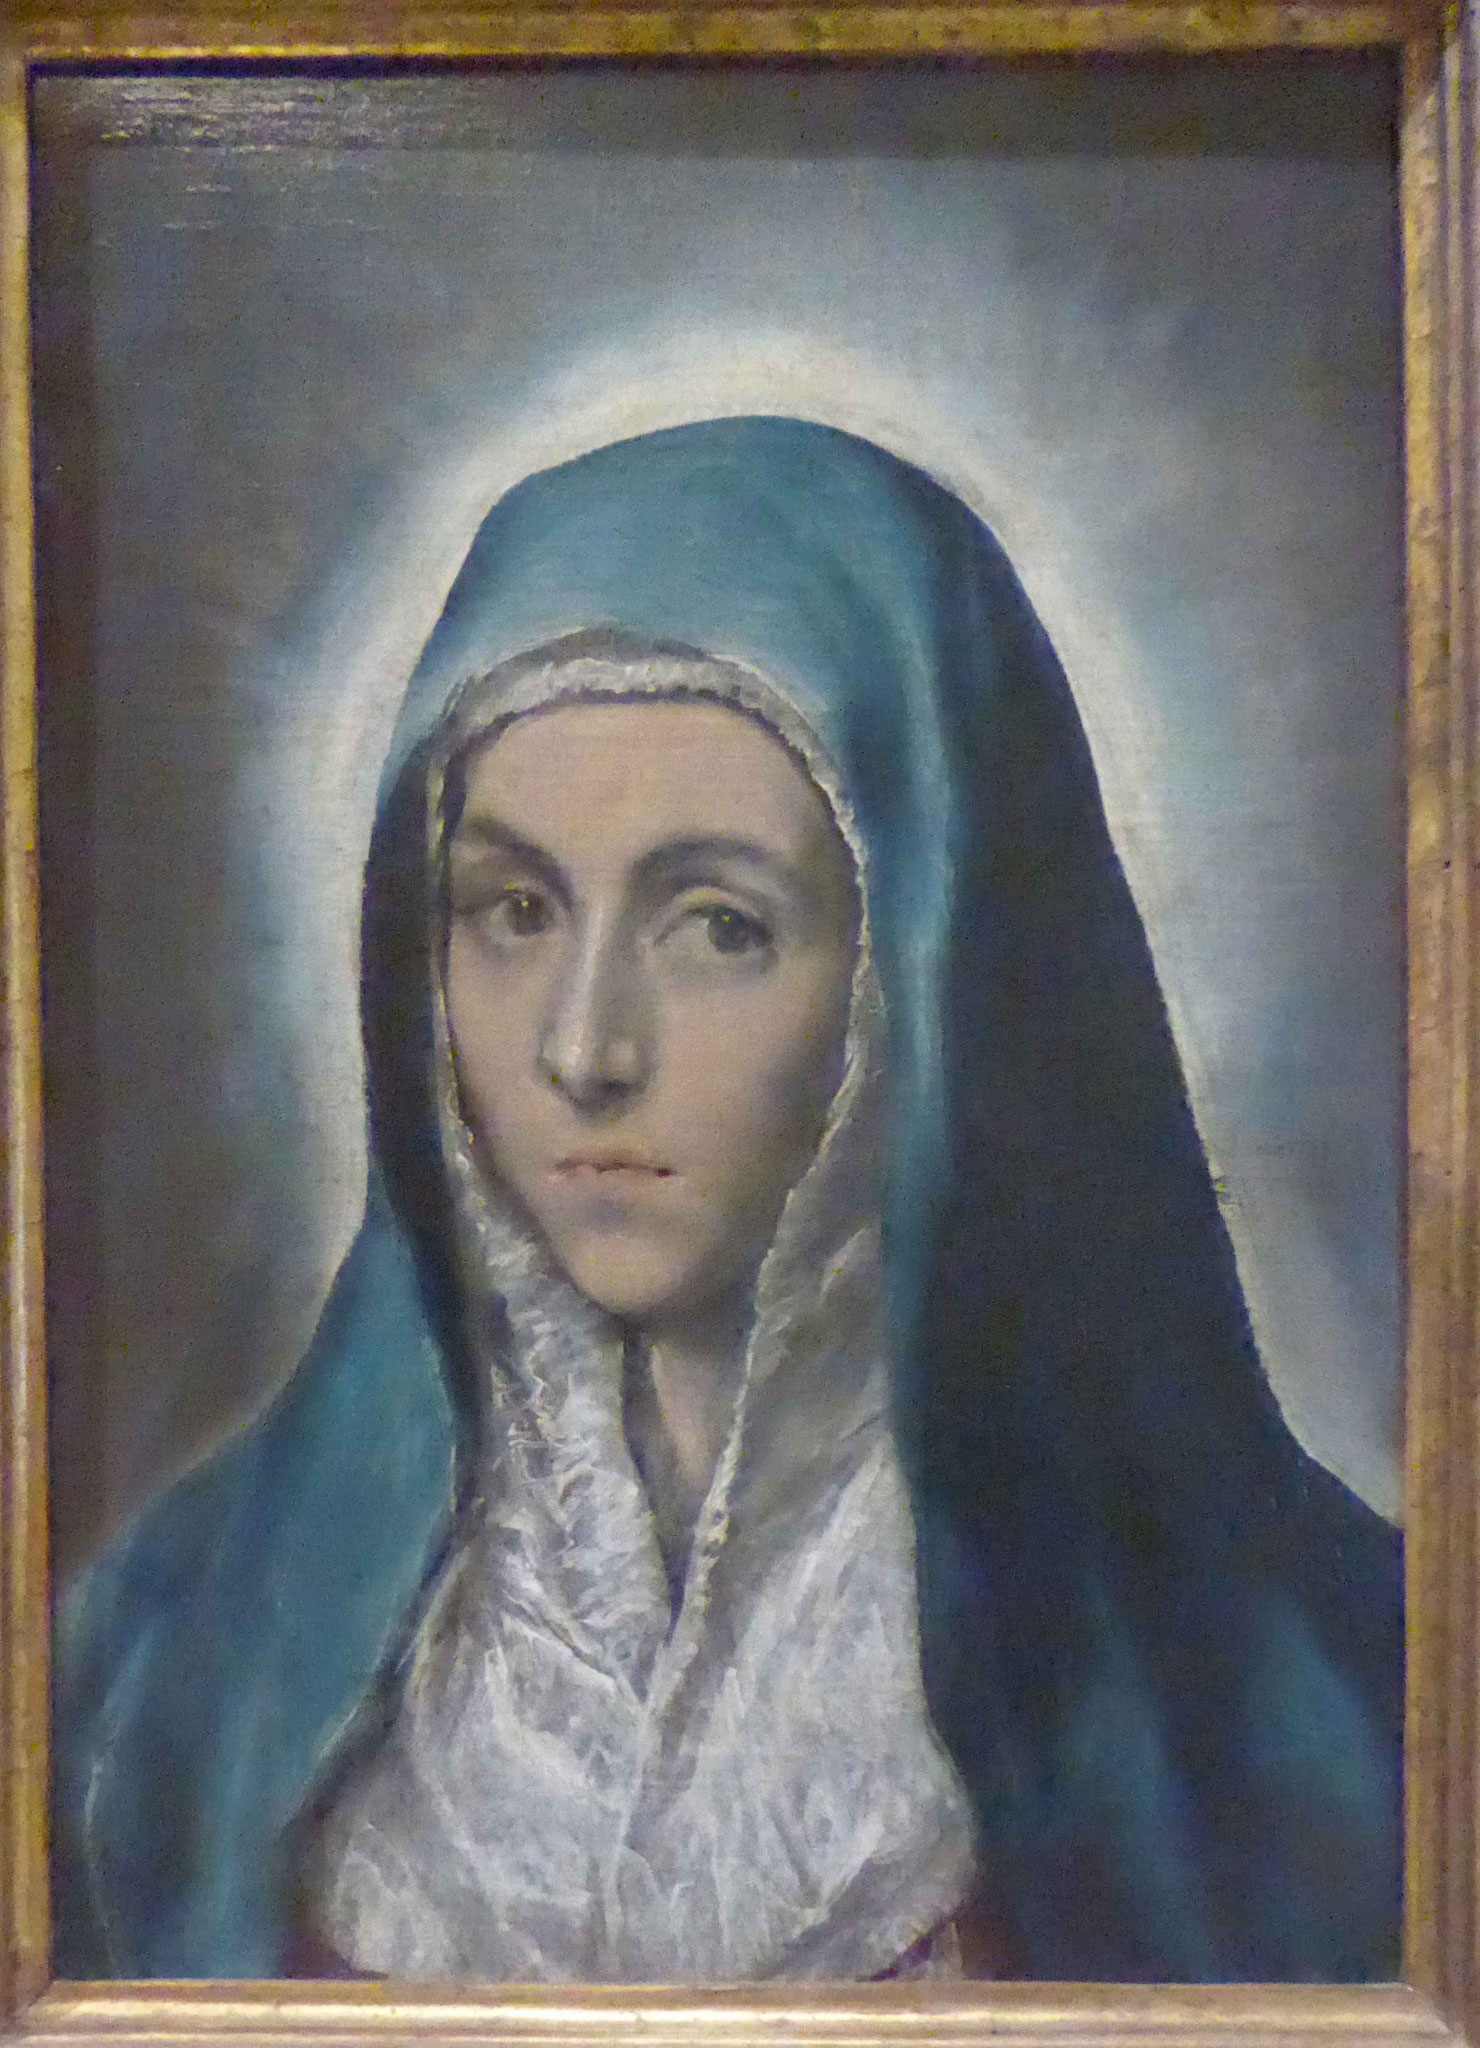 El Greco, Musée d'Art Moderne, Strasbourg